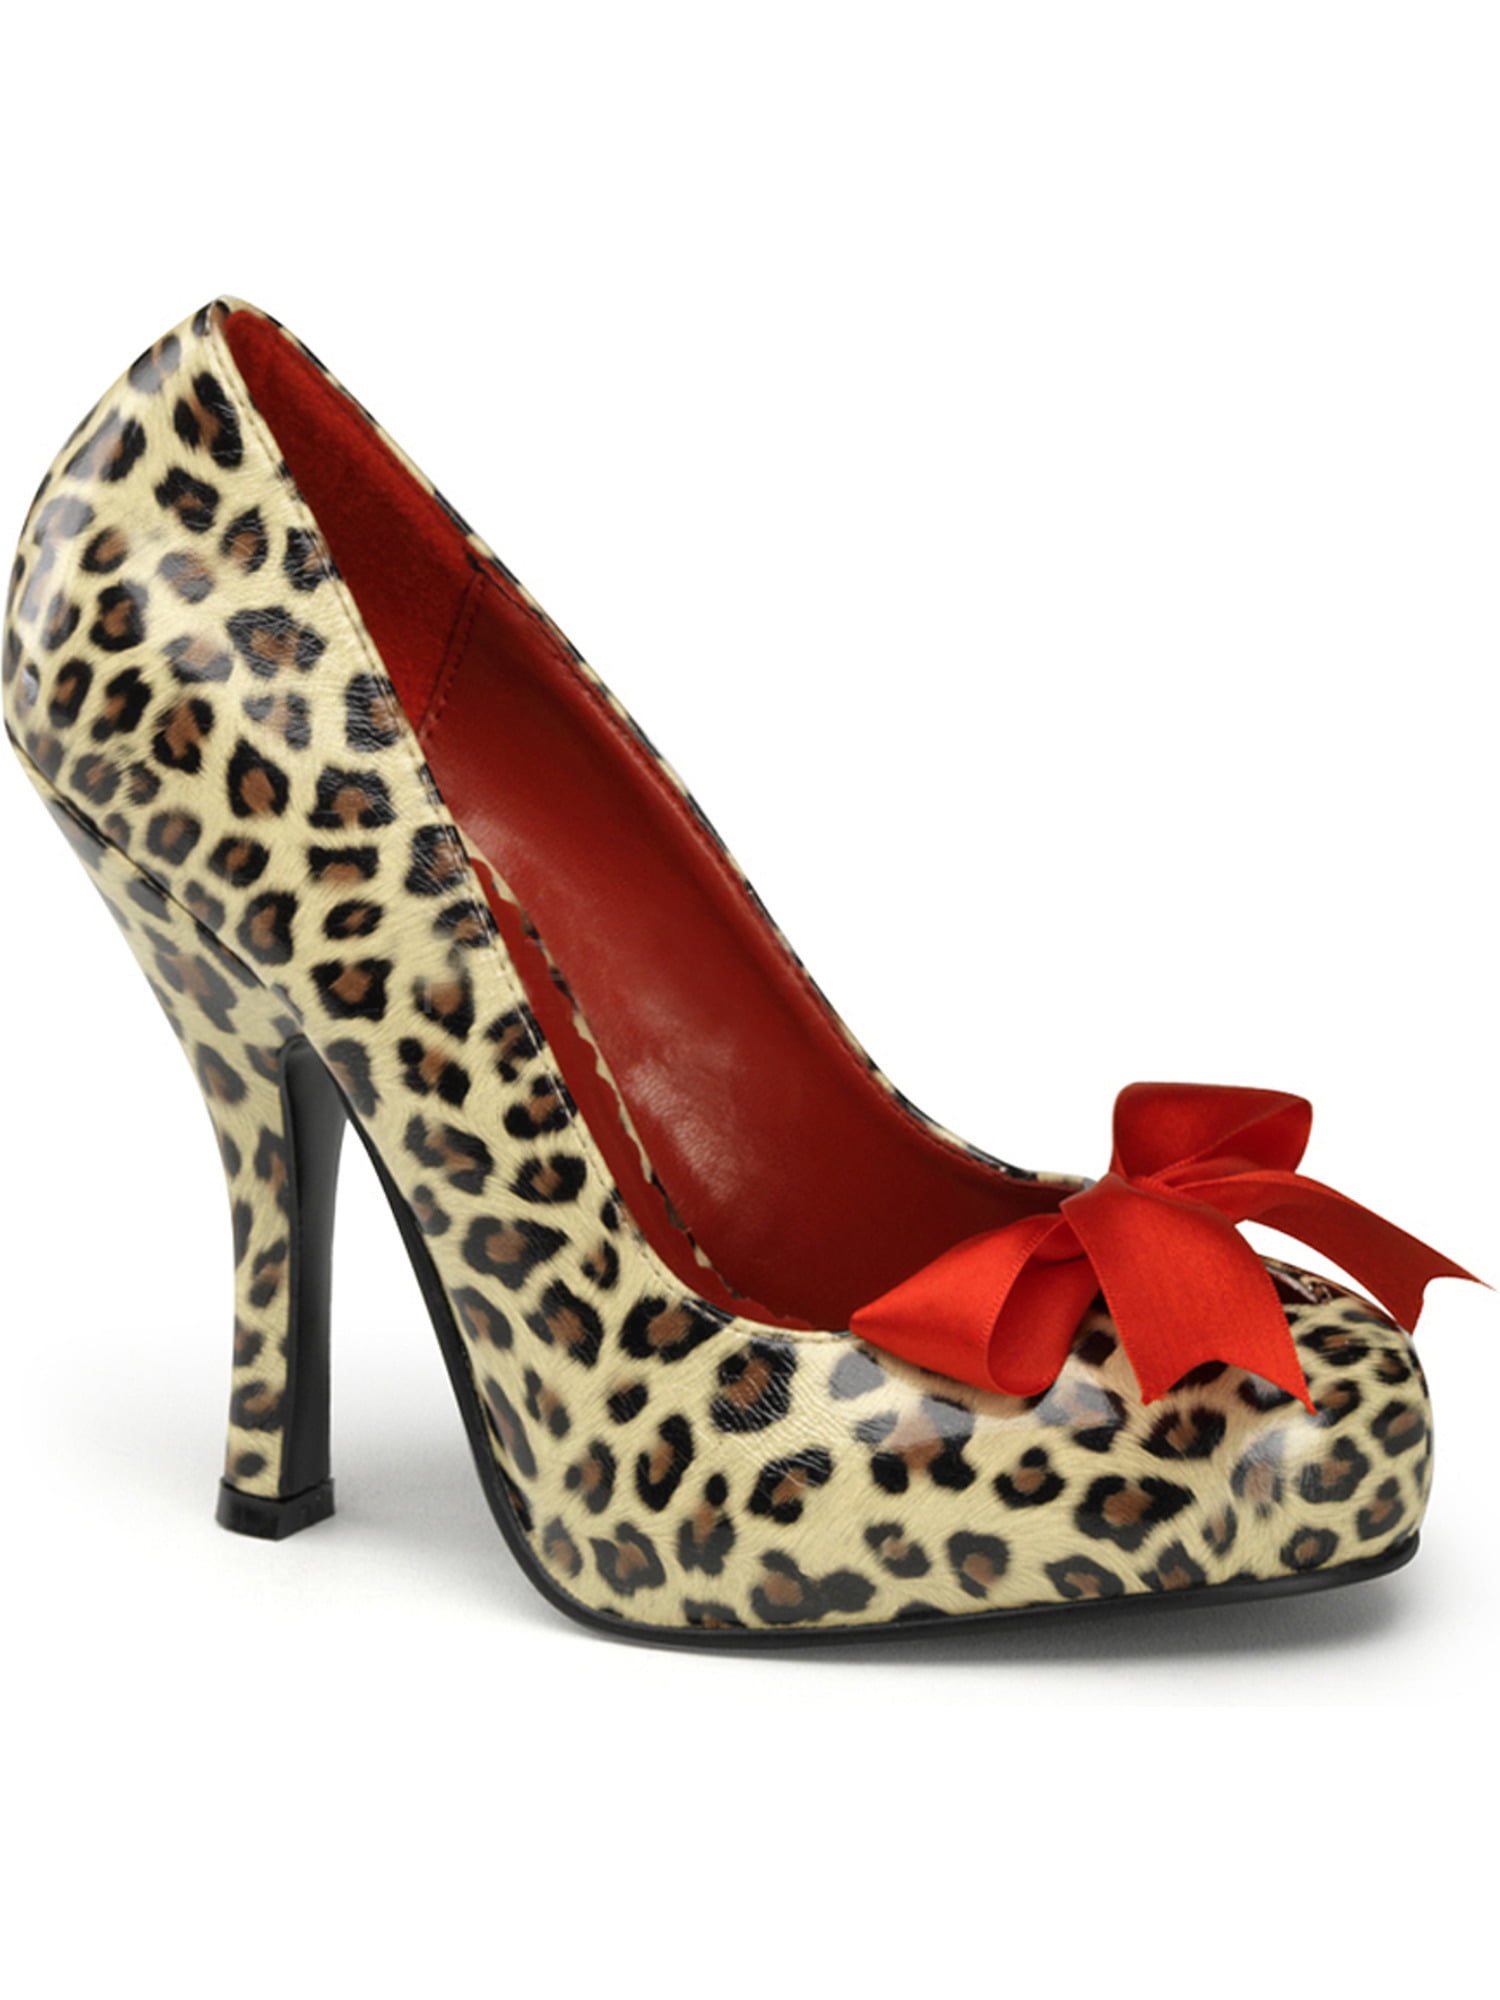 leopard print shoes size 2